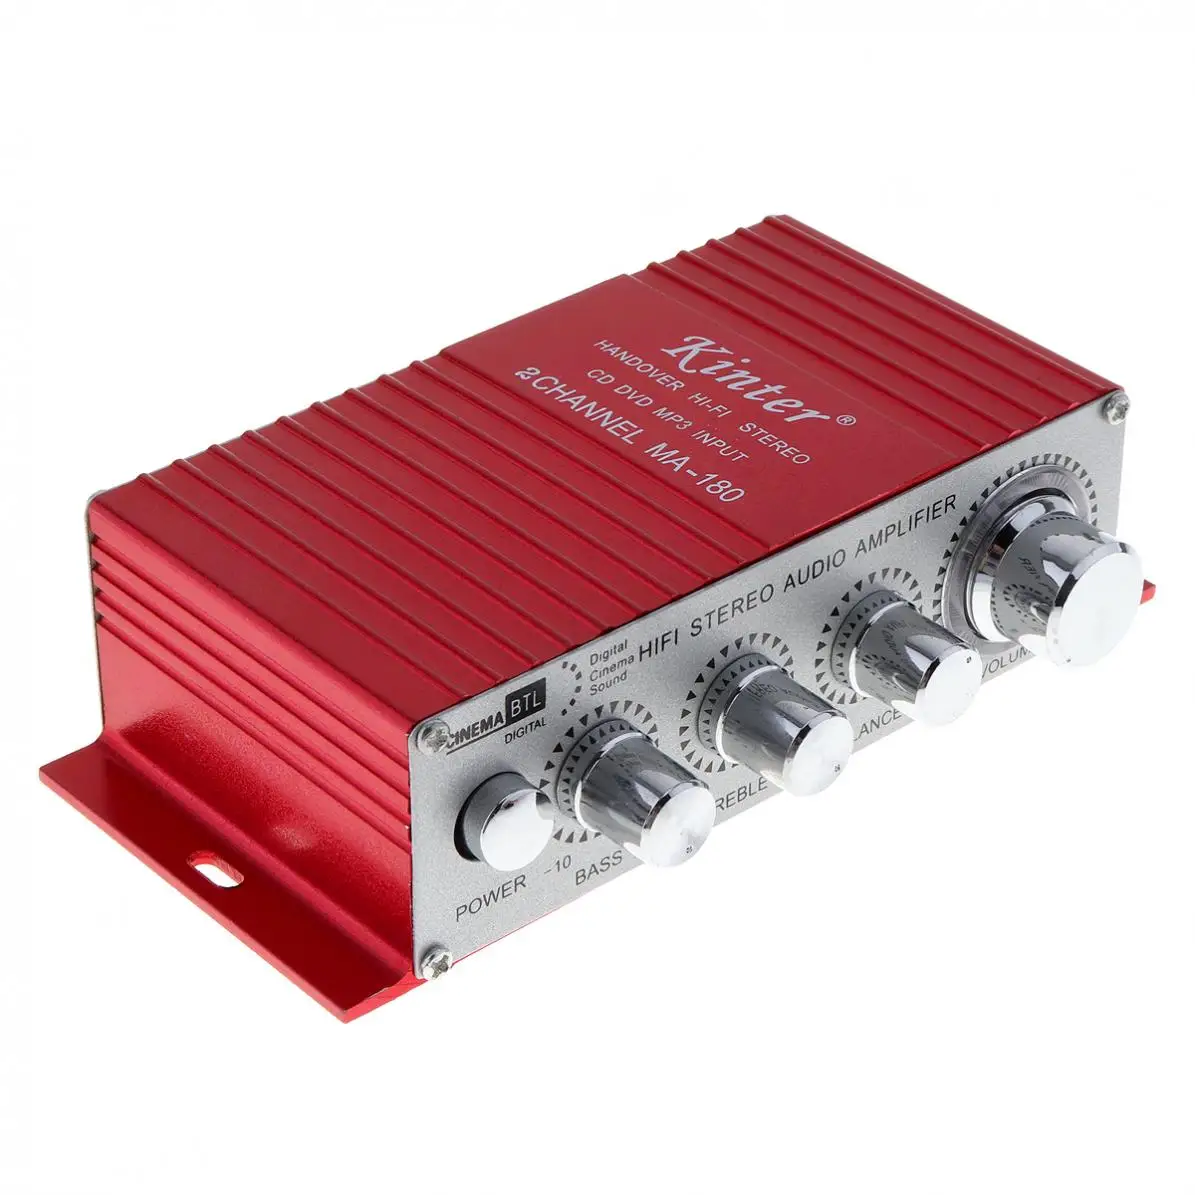 Красный MA-180 мини USB автомобильный лодочный аудио авто усилитель мощности 2CH стерео HIFI Amp 12 V/5A